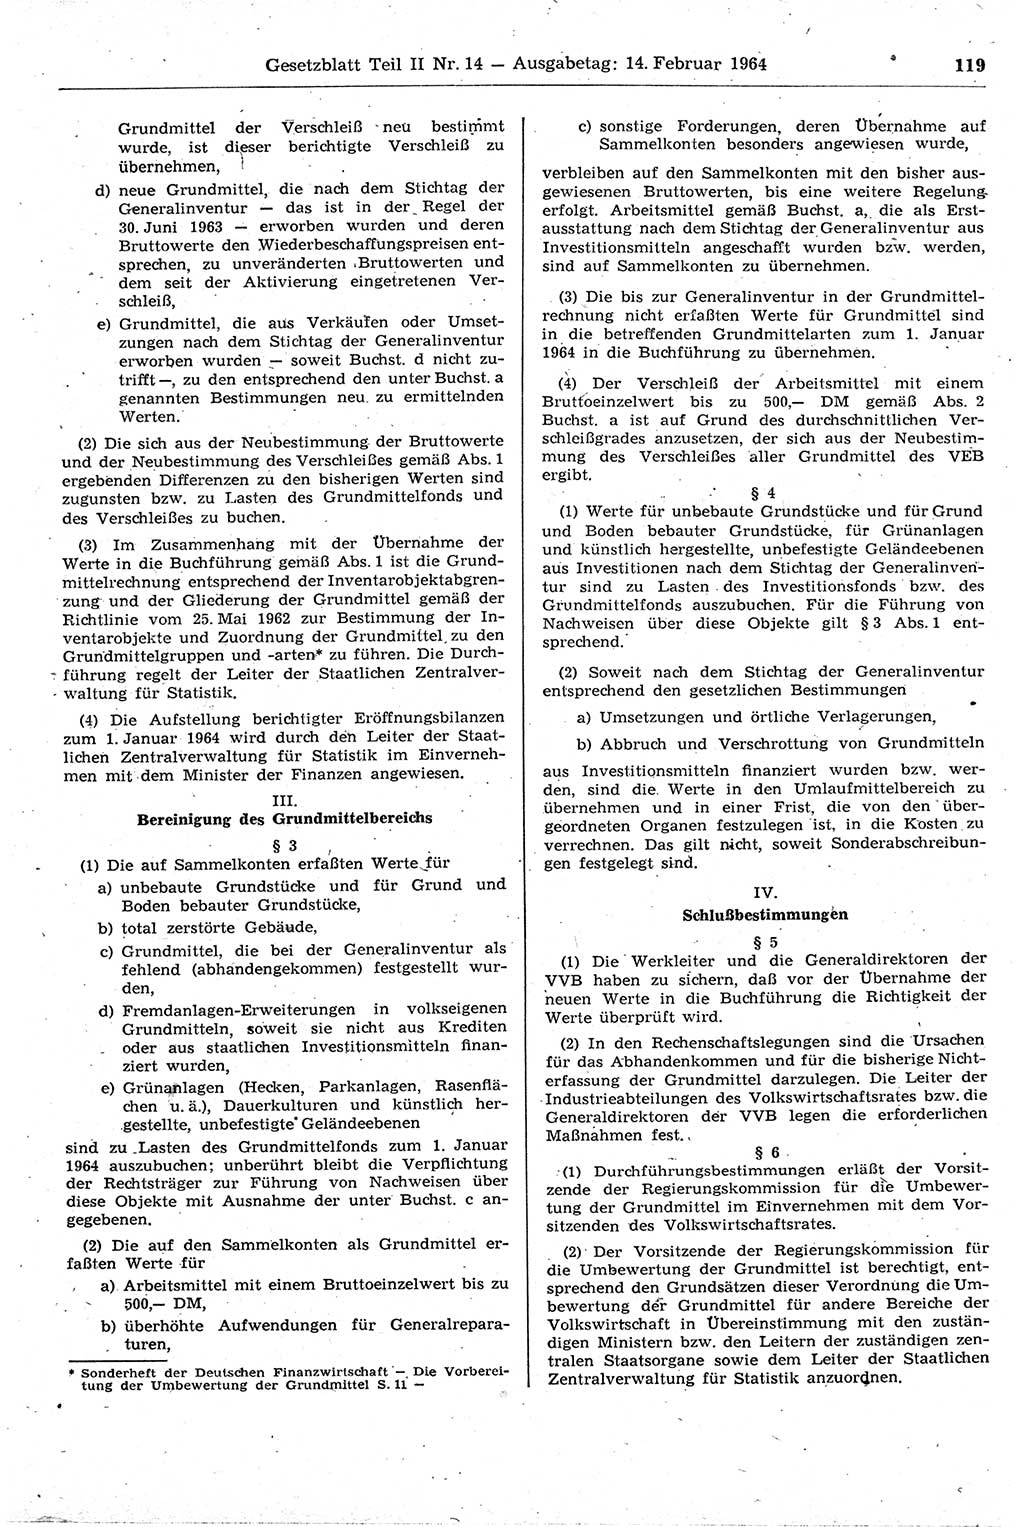 Gesetzblatt (GBl.) der Deutschen Demokratischen Republik (DDR) Teil ⅠⅠ 1964, Seite 119 (GBl. DDR ⅠⅠ 1964, S. 119)